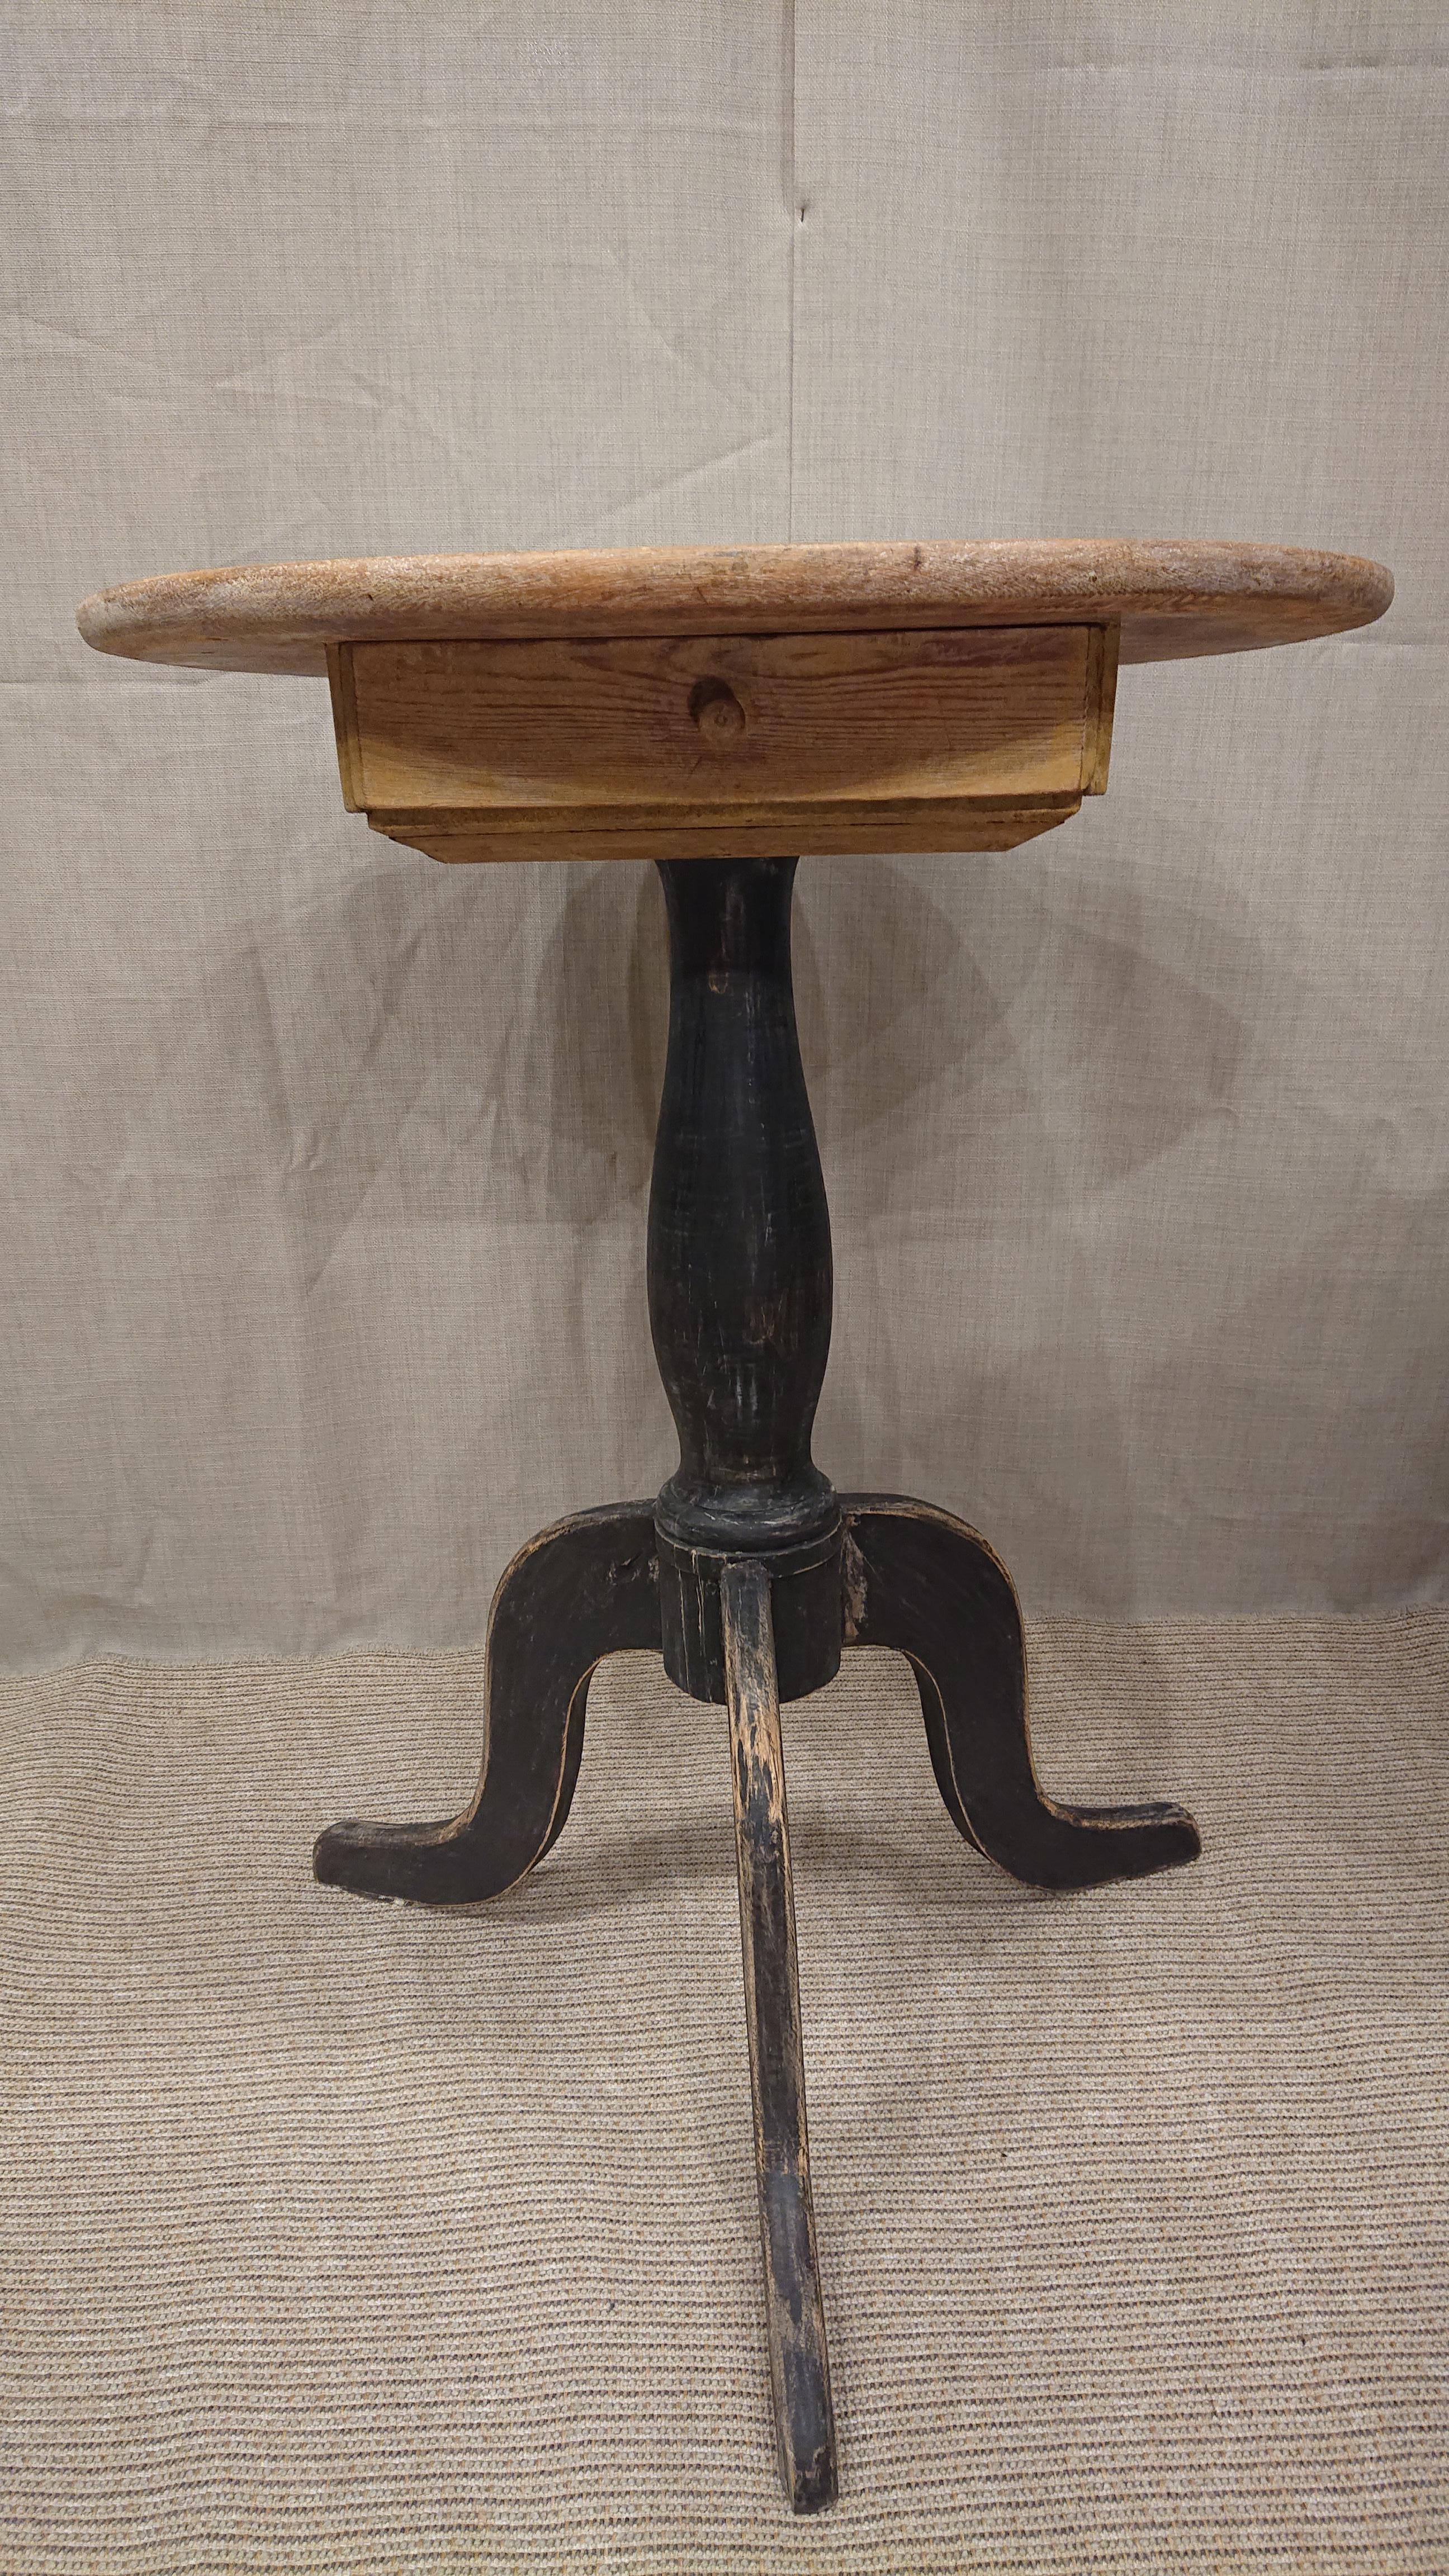 schwedischer Empire-Sockeltisch aus dem 19. Jahrhundert mit Originallackierung.
Ein sehr charmanter Tisch mit einer Schublade.
Von Hand geschabt in seiner ursprünglichen Farbe.
Gedrechselter Sockel, getragen von schön geschnitzten Beinen.
Das